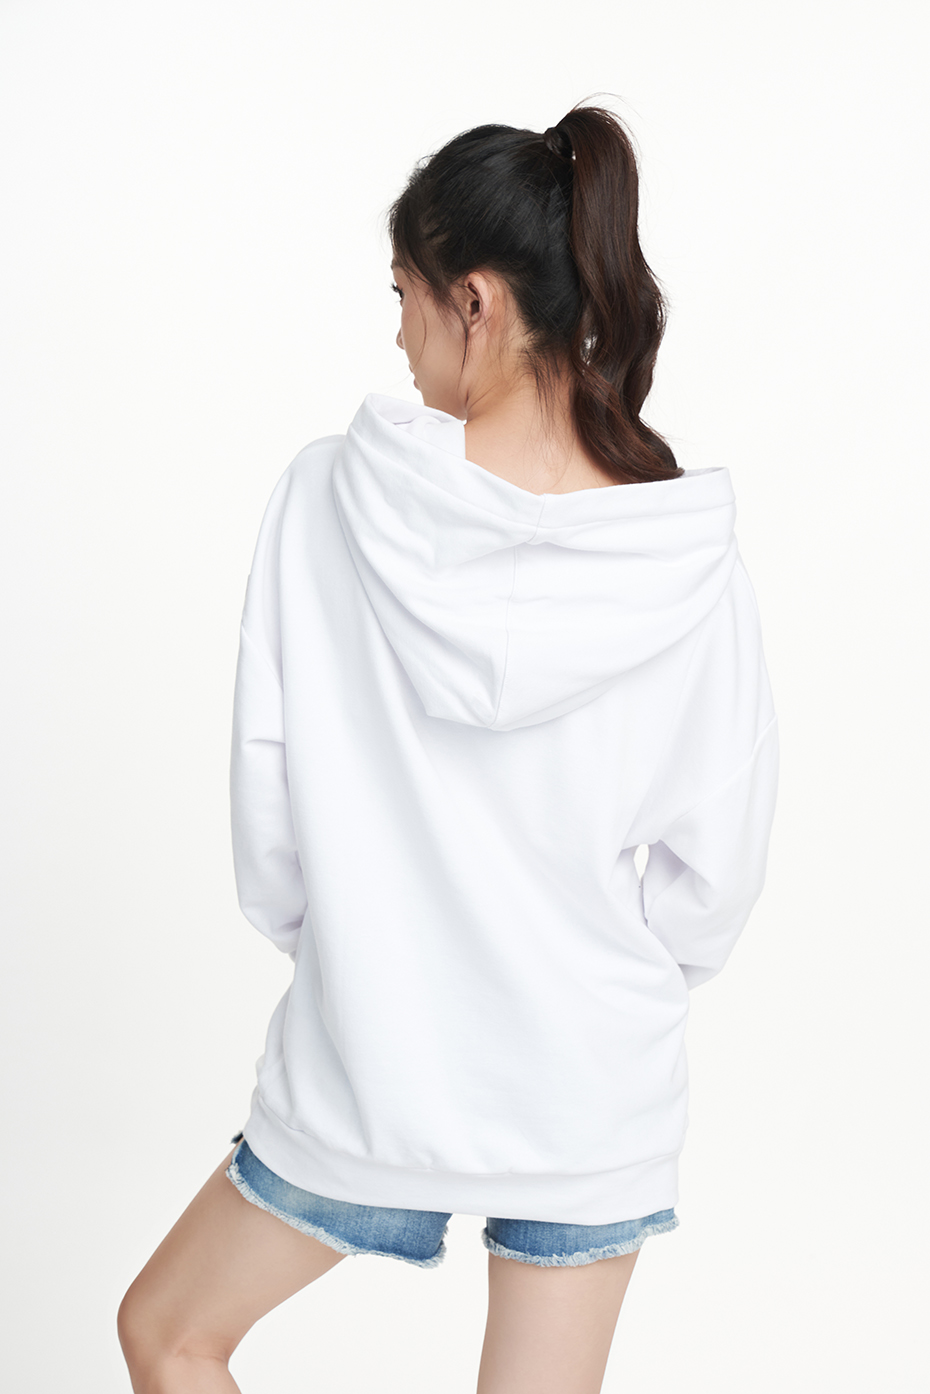 NINOMAXX Áo hoodies Nữ chất liệu cotton dày dặn 2204009